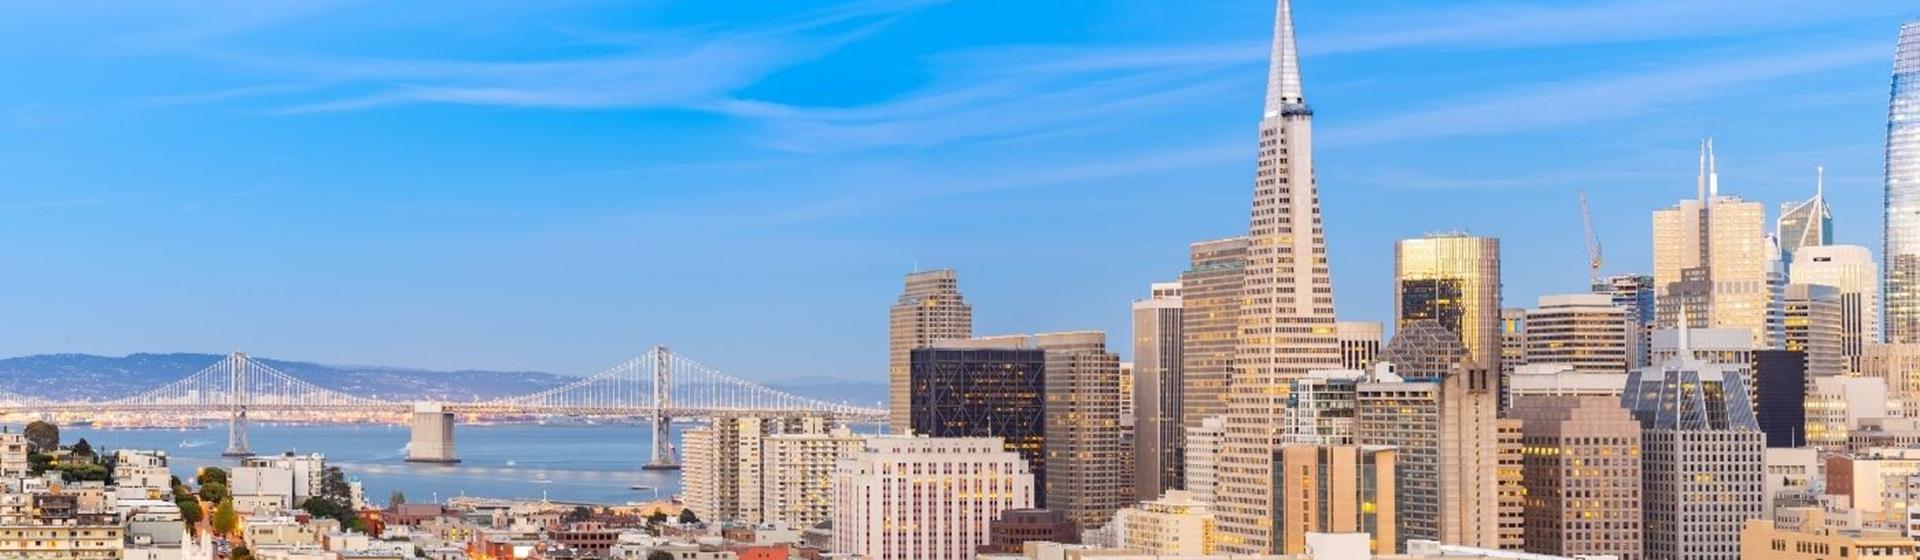 Holidays & City Breaks to San Francisco